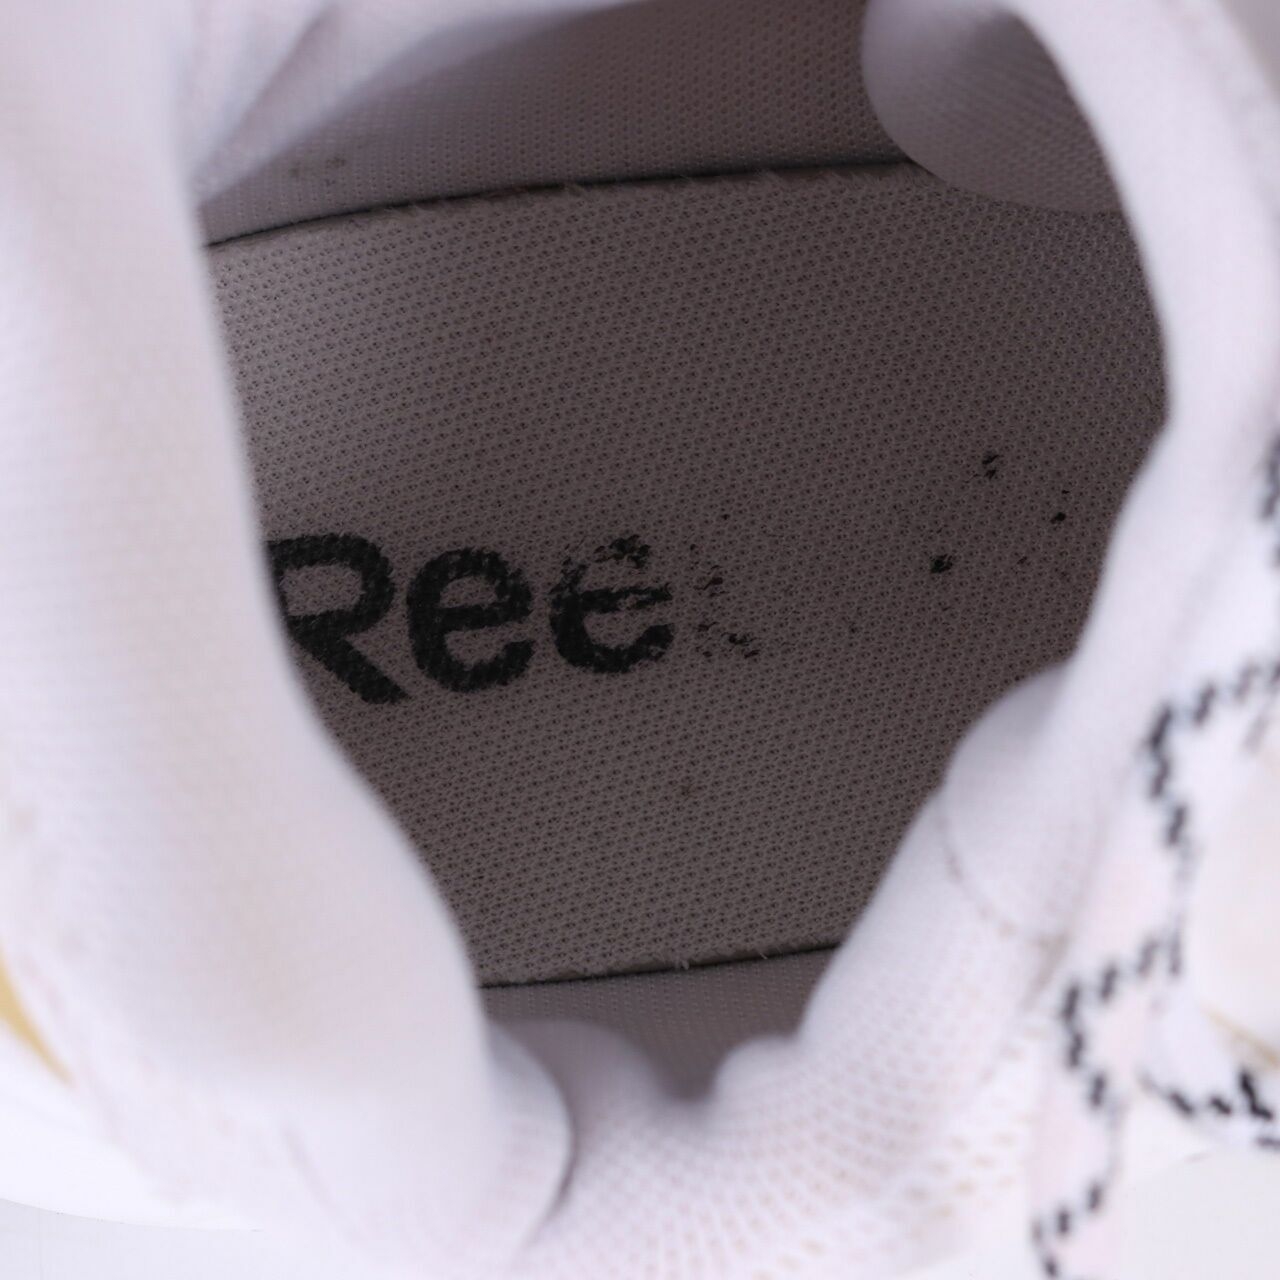 Reebok Split Fuel White Sneakers